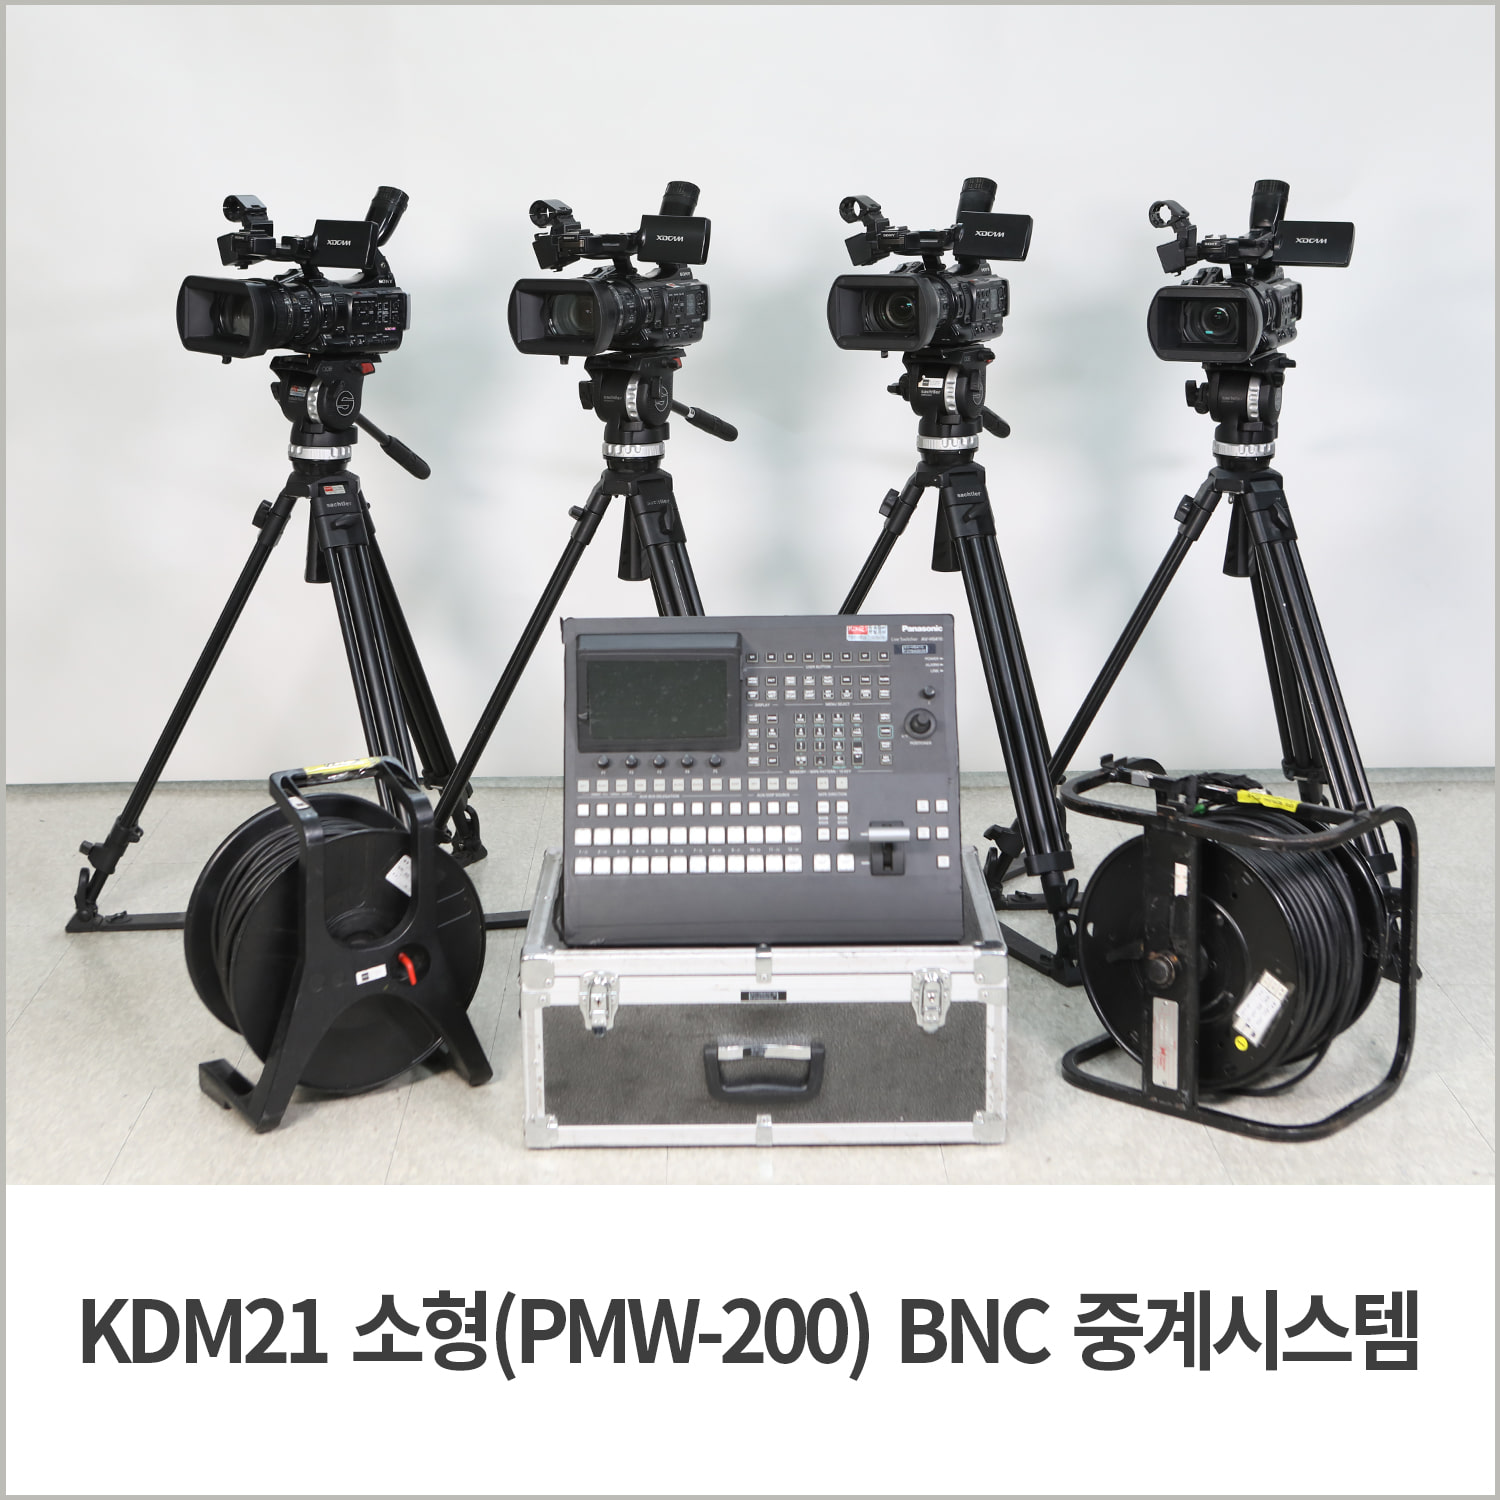 [중계시스템] KDM21 소형(PMW-200) BNC 중계시스템